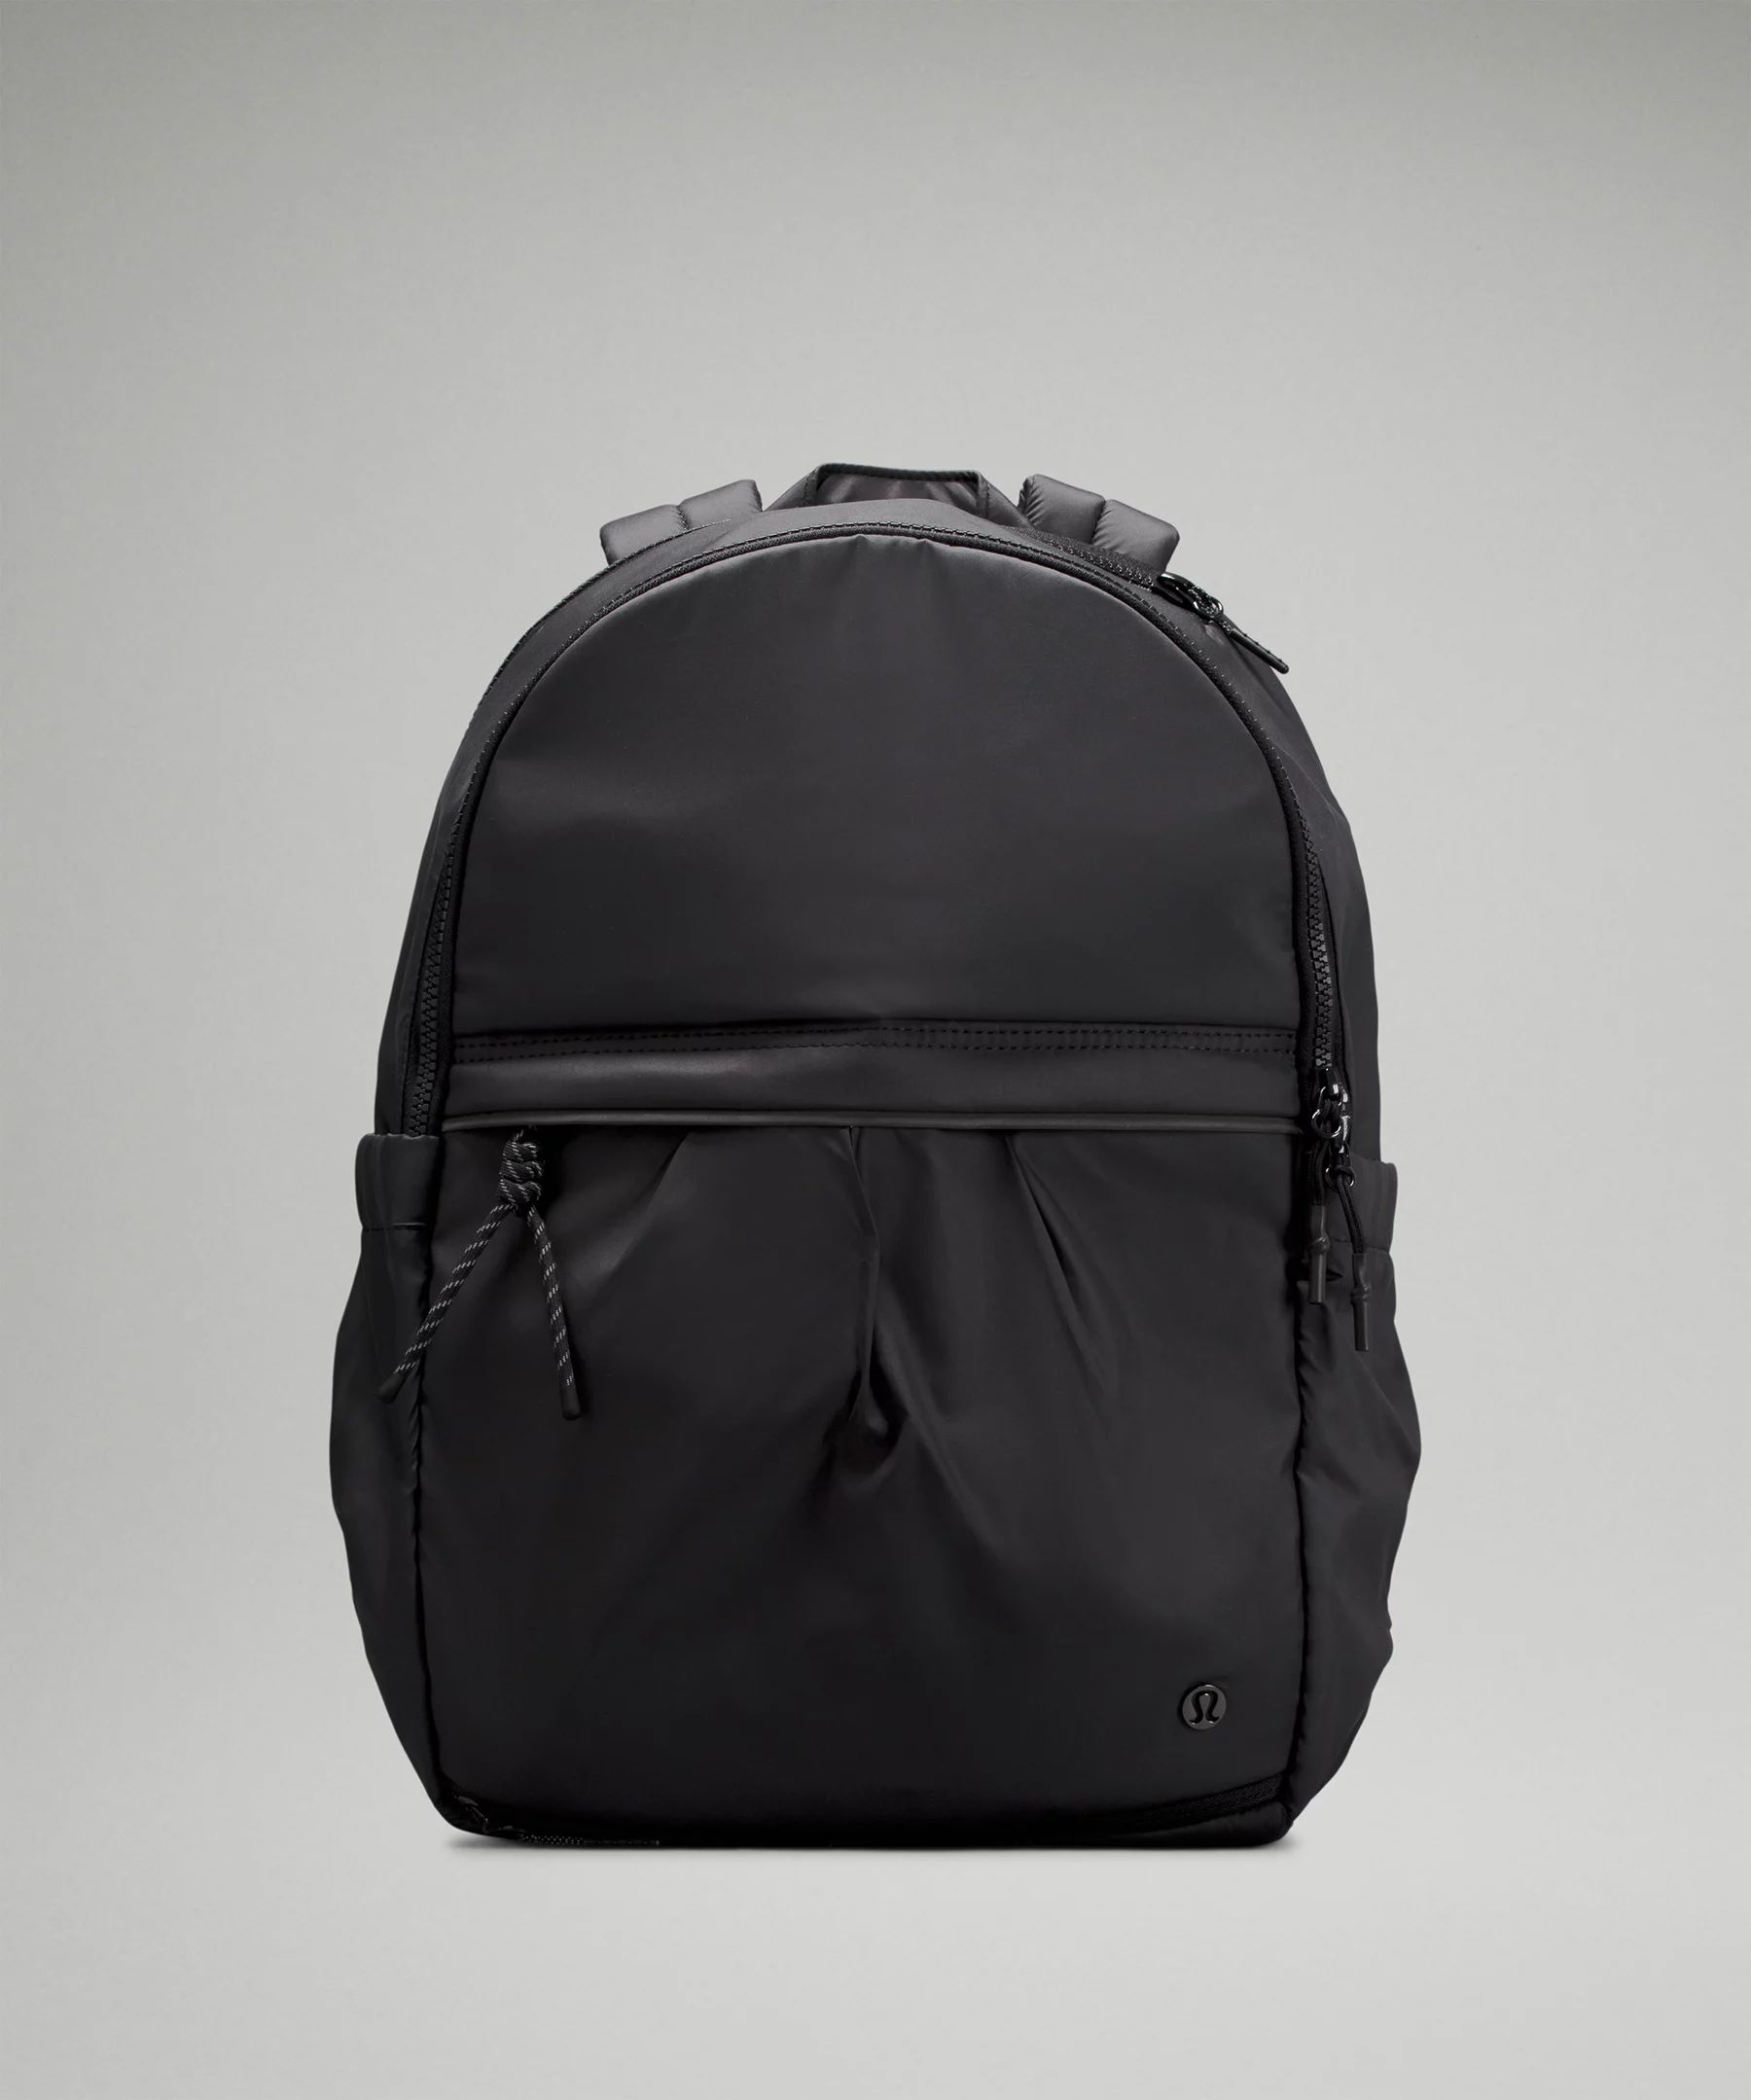 Pack it Up Backpack 21L | Lululemon (US)